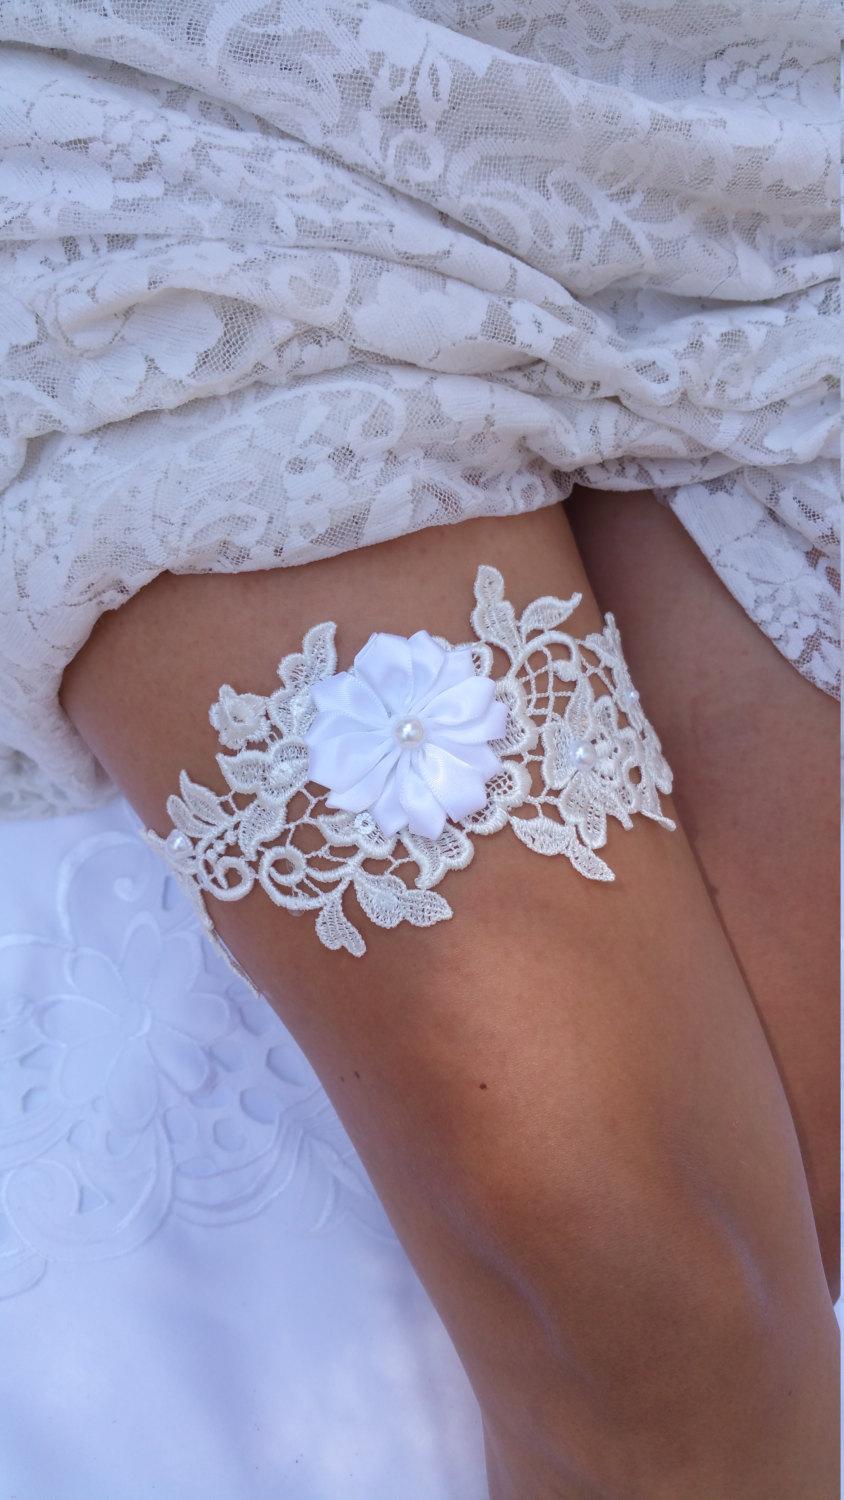 زفاف - Ivory Lace wedding garter, White Lace Garter, Lace Bridal Garter, Garter Belt Wedding, Prom Garters, Garter Wedding, White Flower Garter,